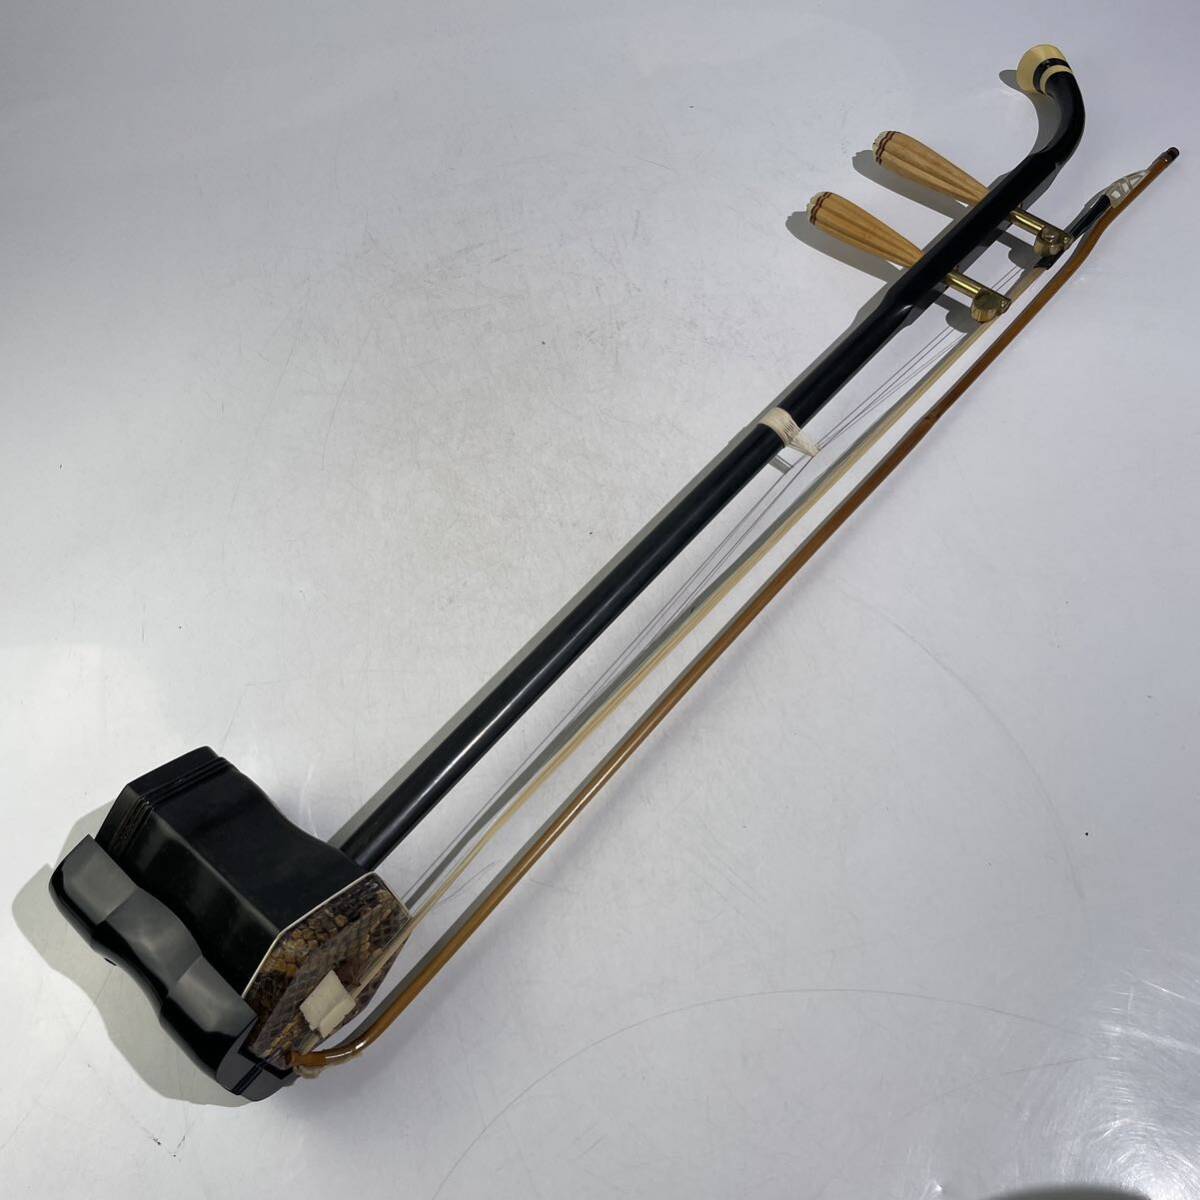  China музыкальные инструменты 2 . с футляром / струнные инструменты этнический музыкальный инструмент традиция музыкальные инструменты . кожа.1955